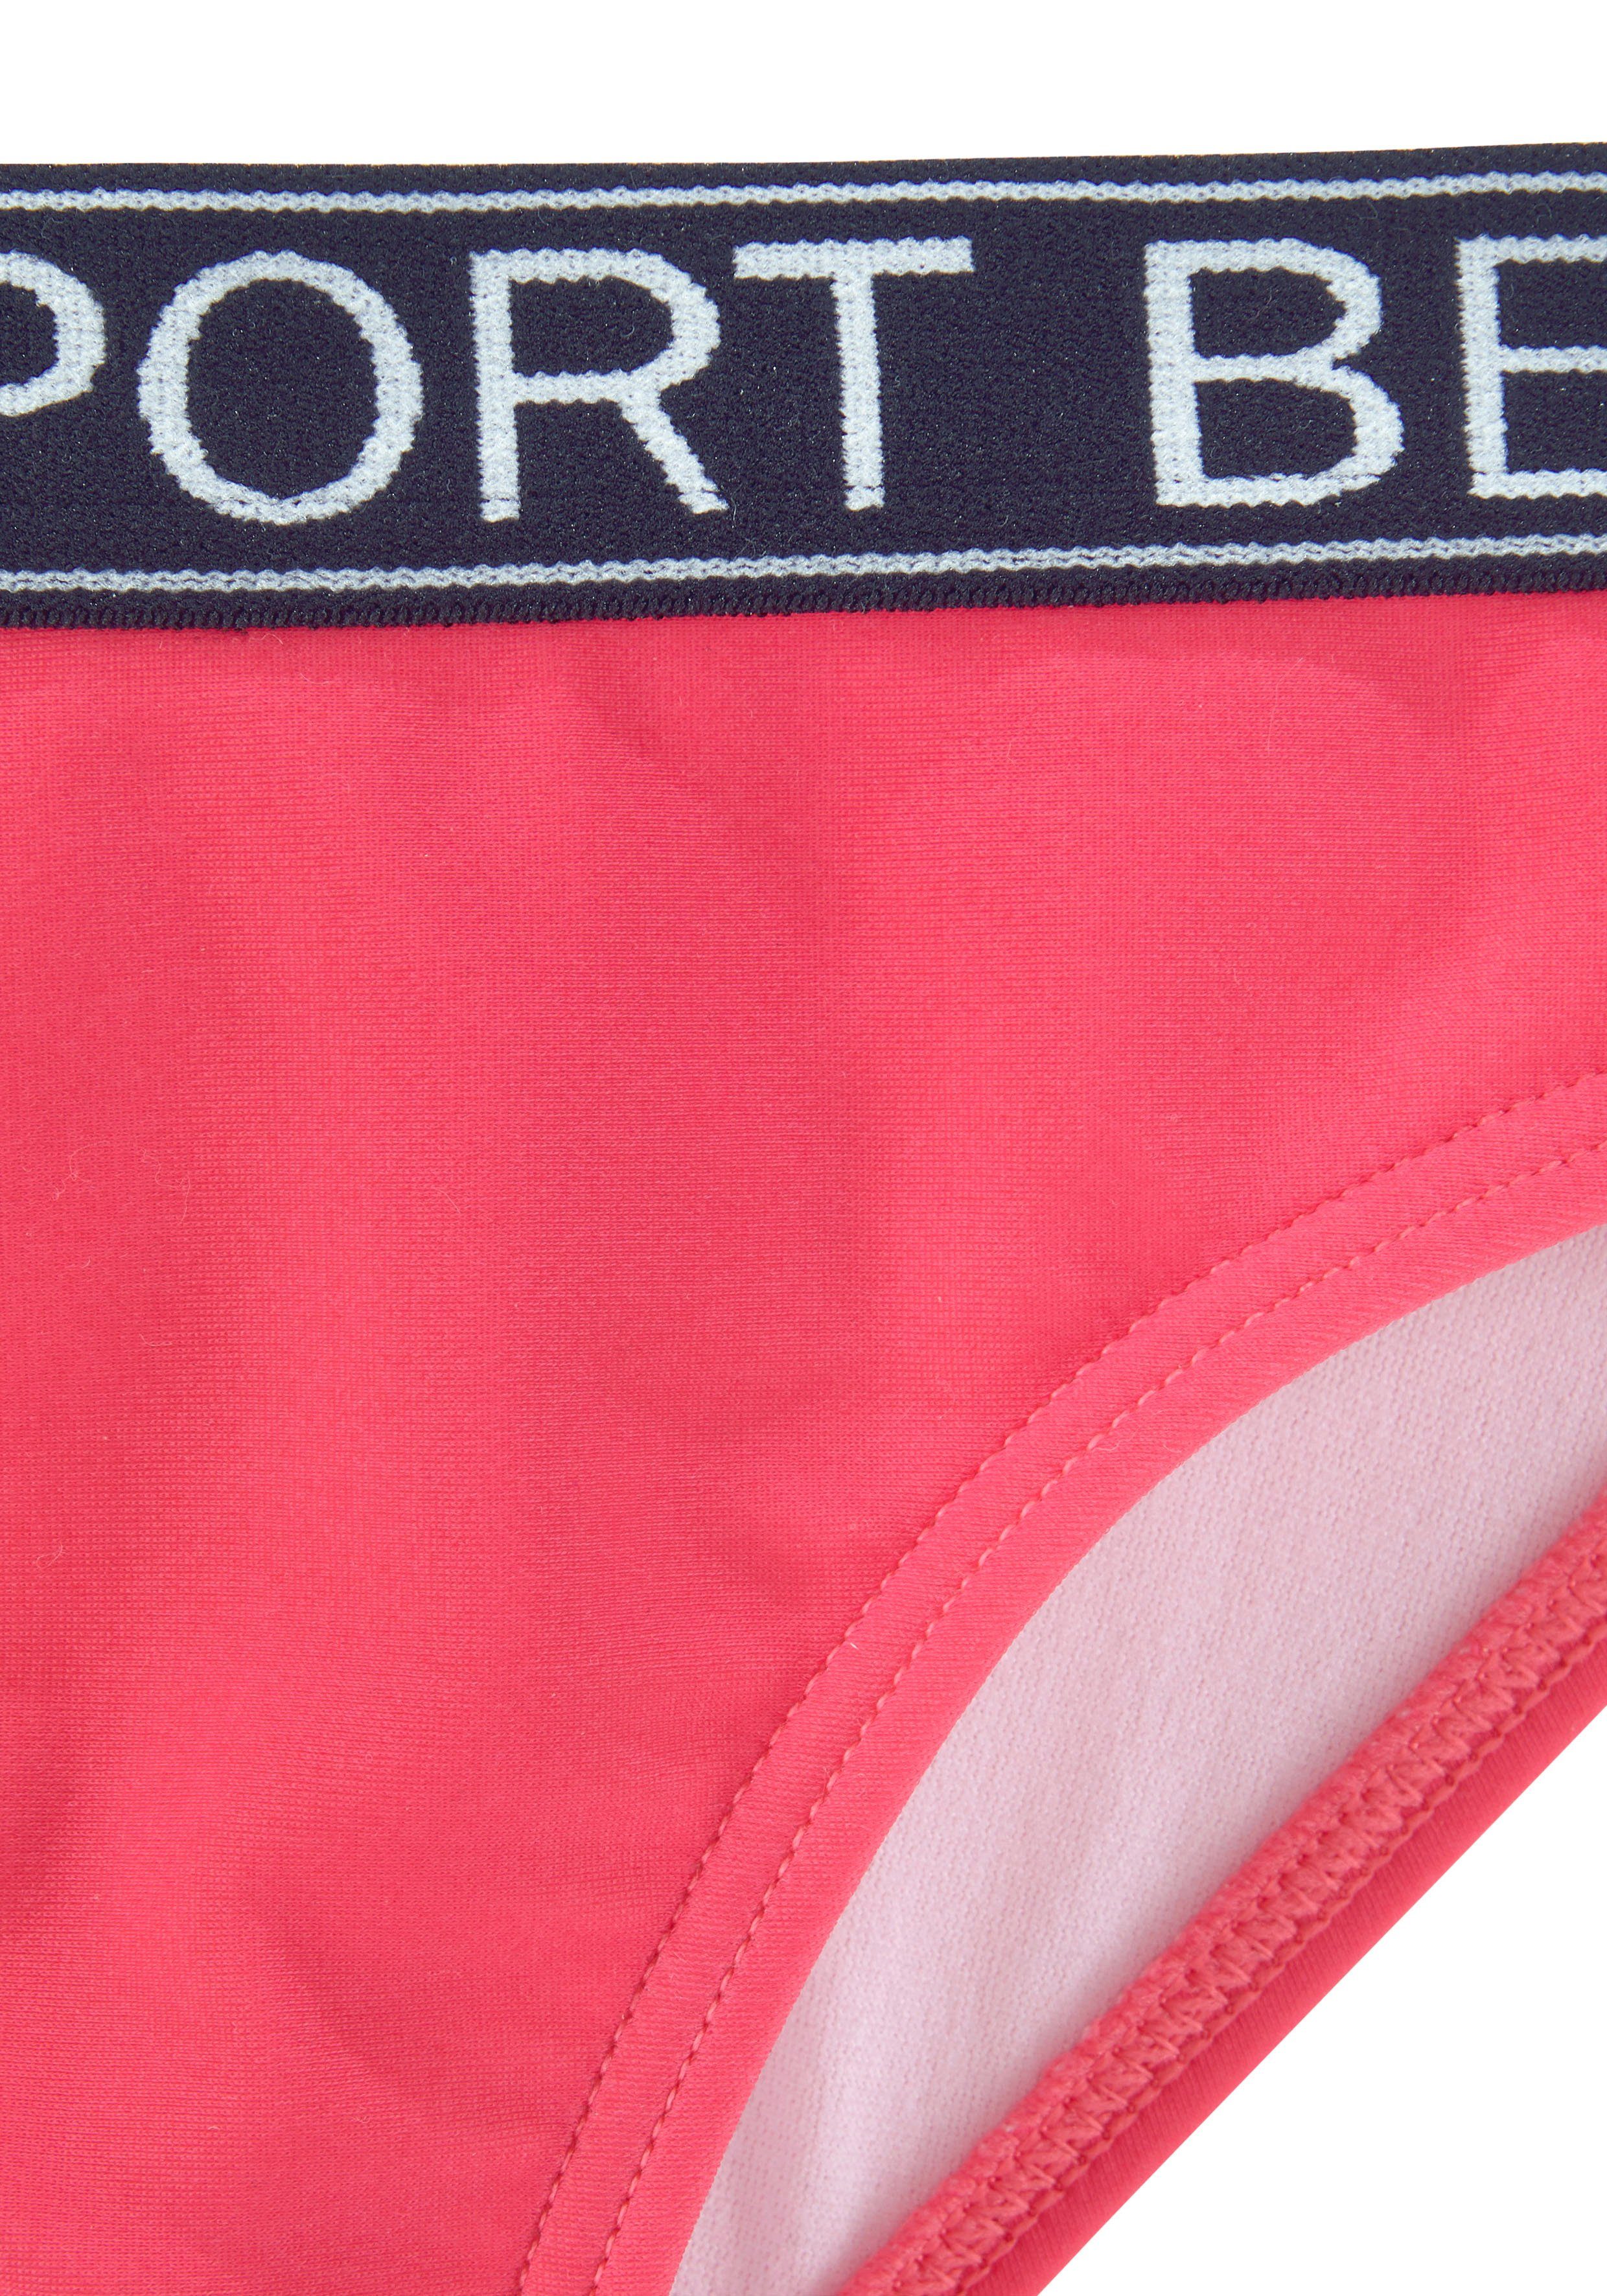 Bench. Bustier-Bikini Yva pink Design in Farben und sportlichem Kids